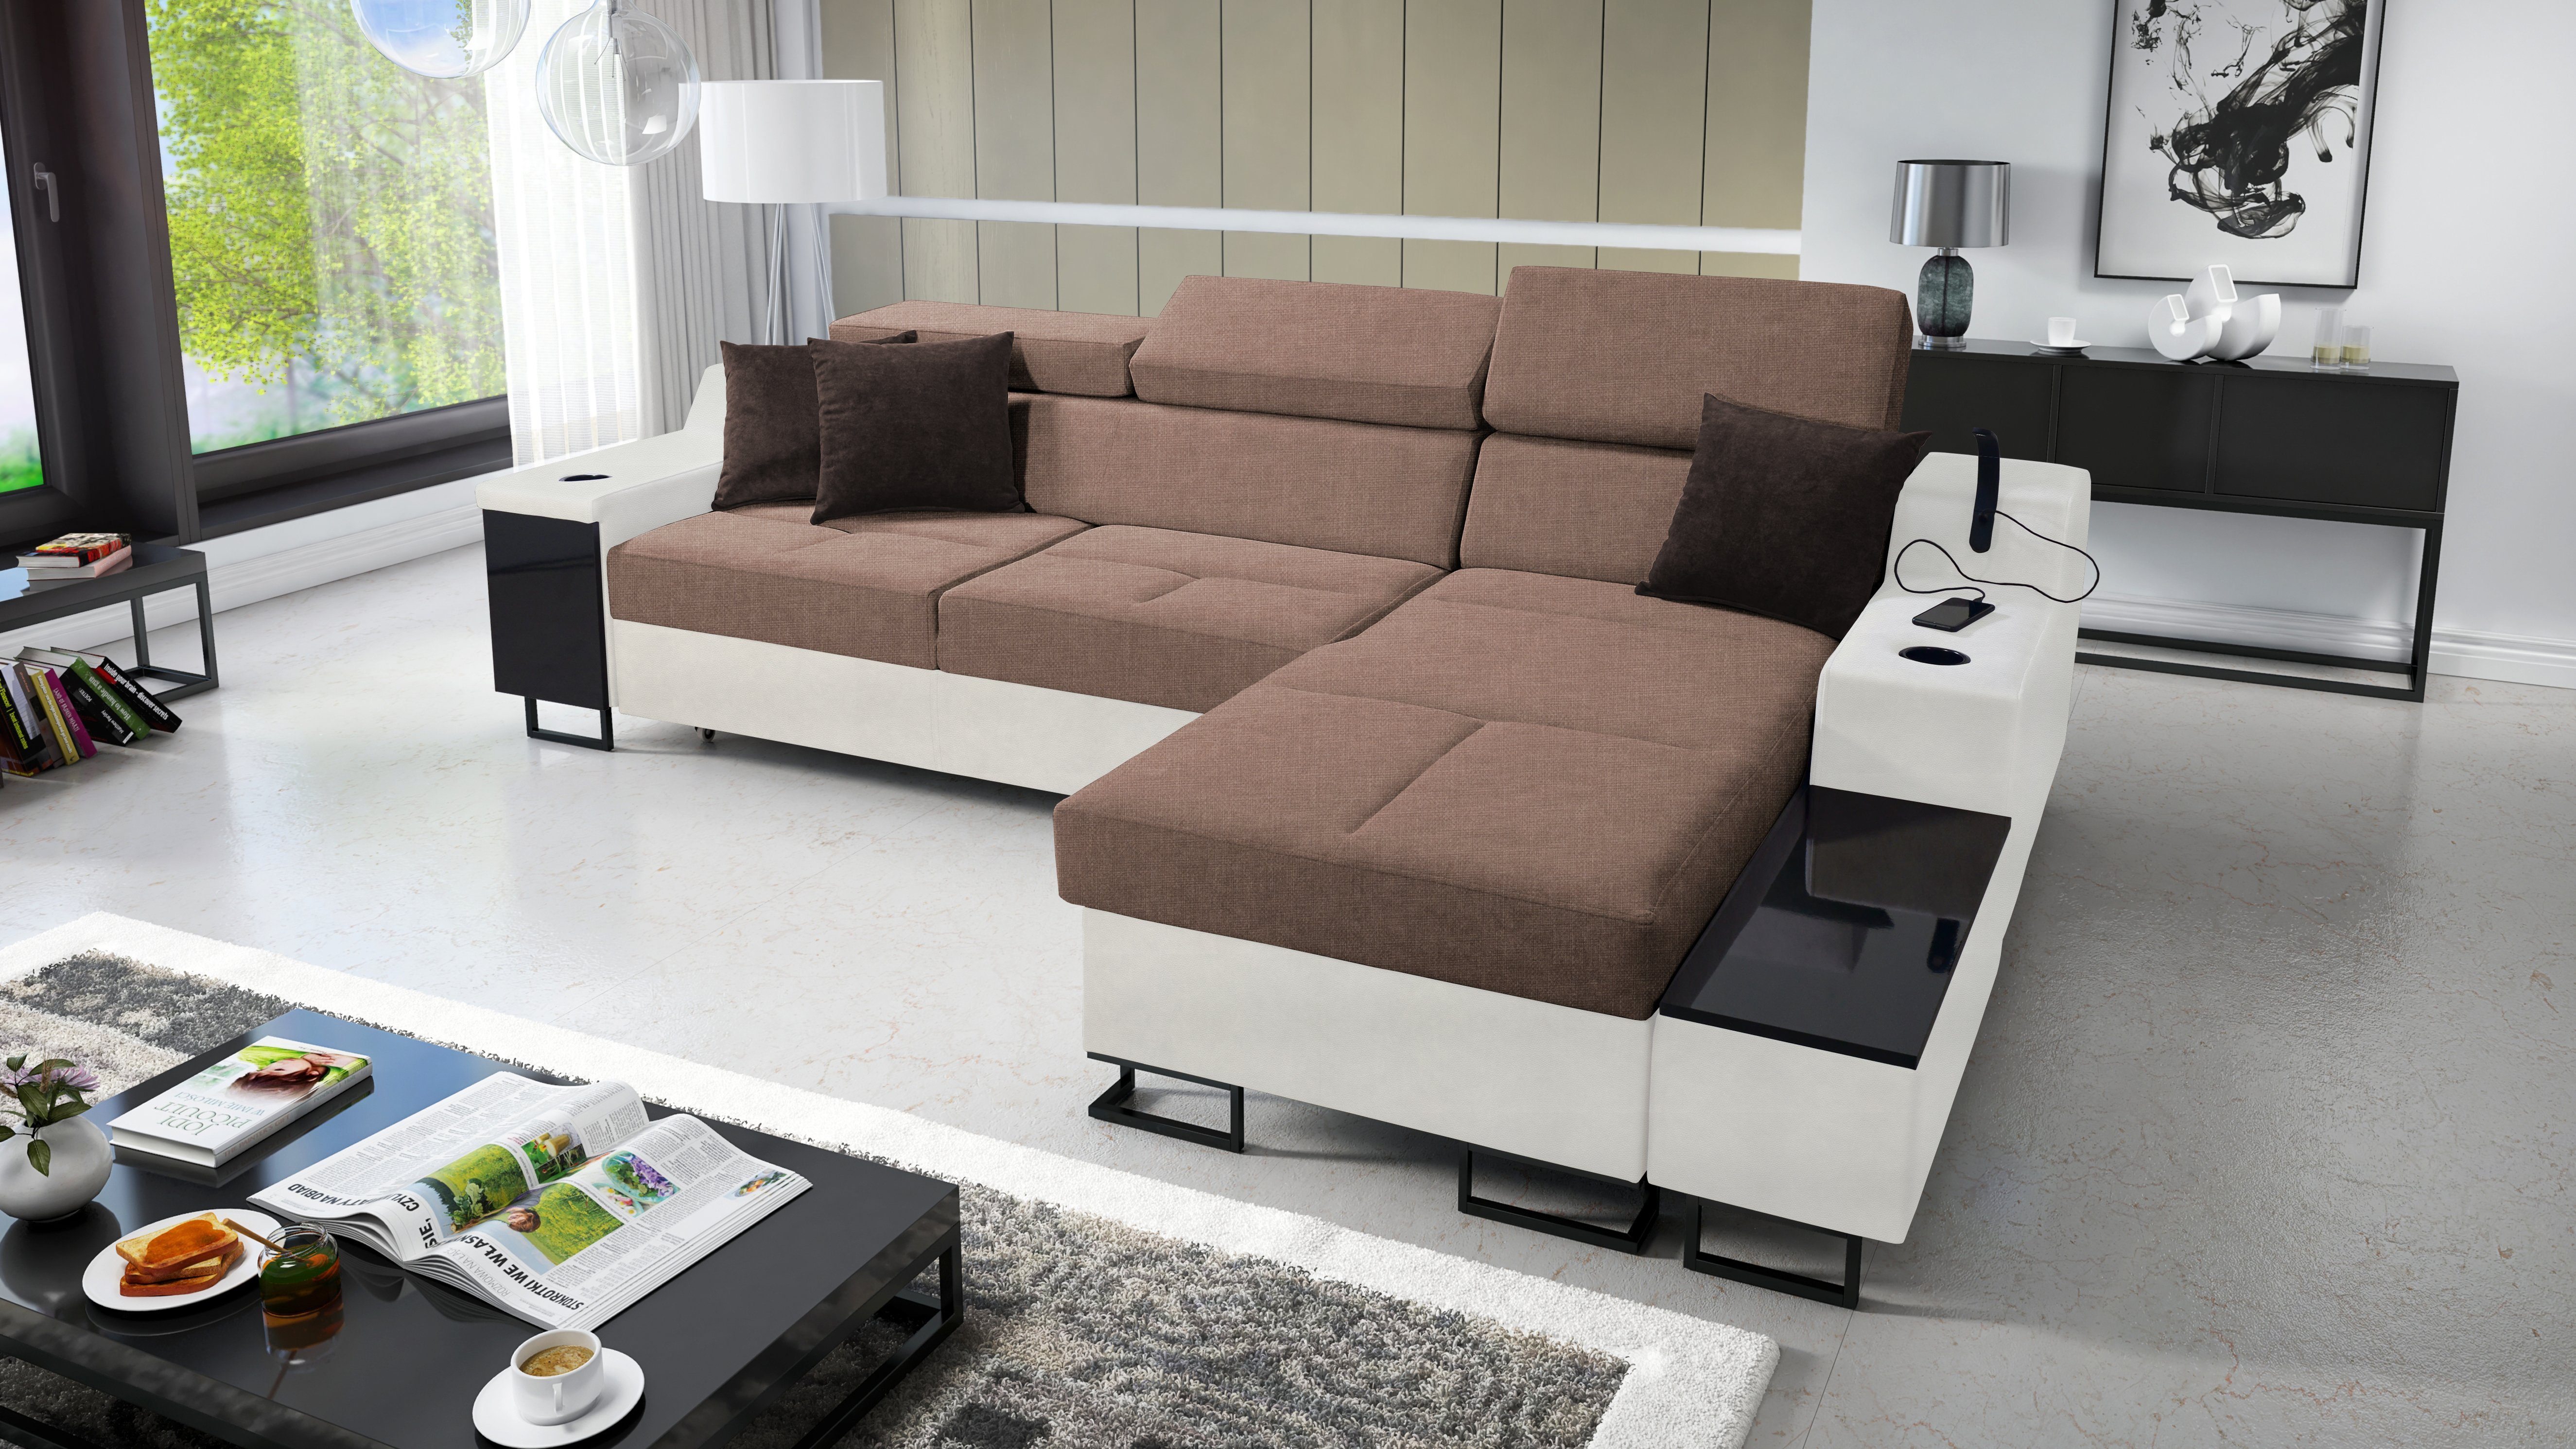 Best for Ecksofa Moderne Maxi: Home & SAWANA25+EKJI für das Bettkasten Wohnzimmer Aria Schlaffunktion I